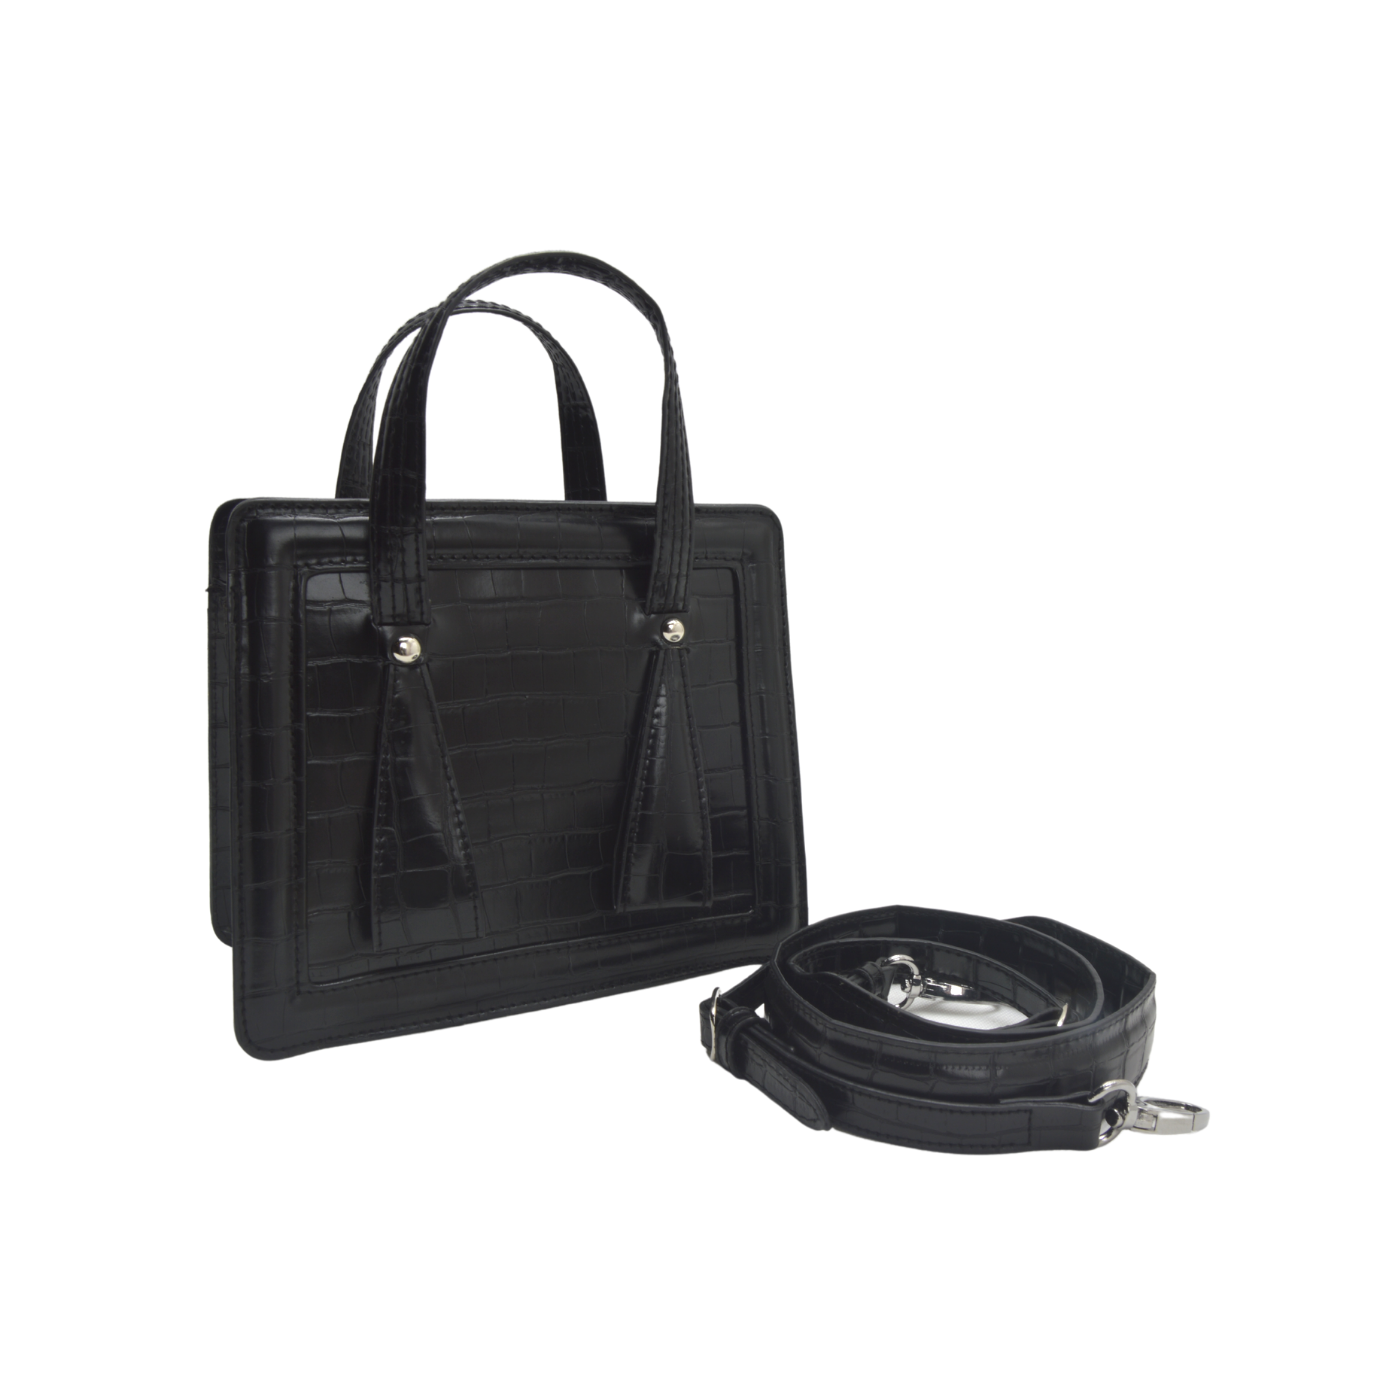 Black Leather Mini Cross Body Bag - Melouk